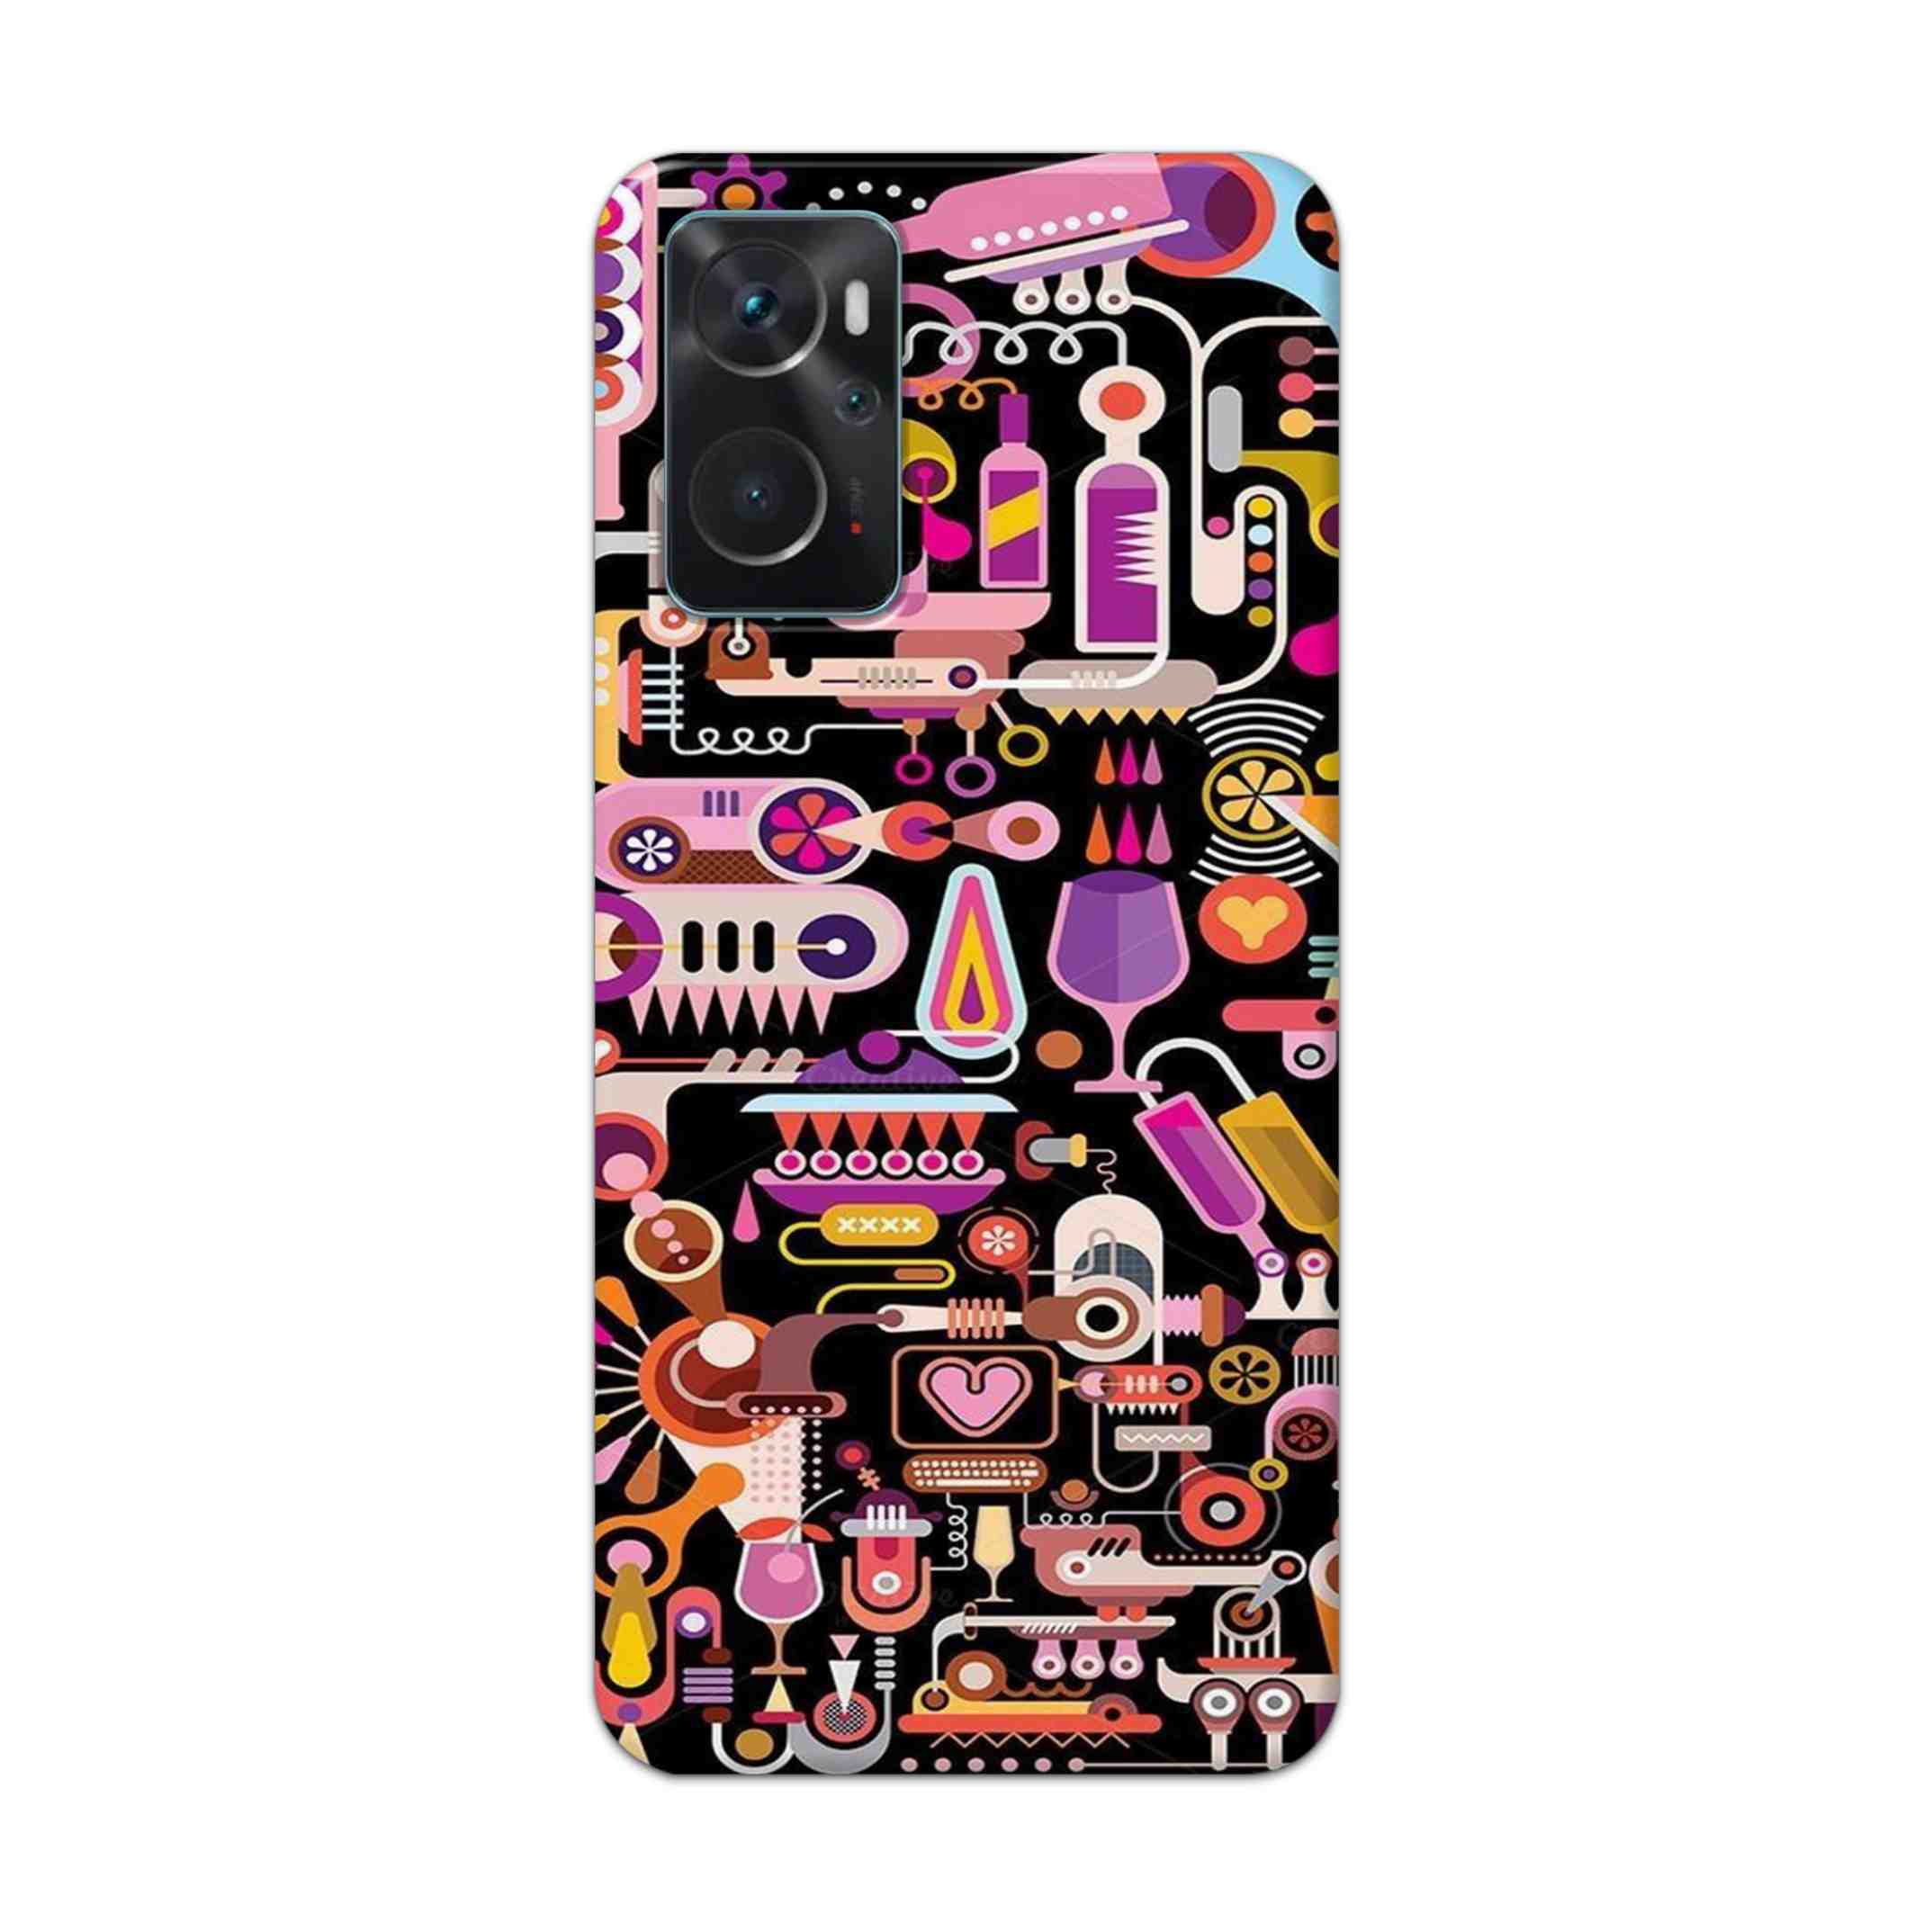 Buy Lab Art Hard Back Mobile Phone Case Cover For Oppo K10 Online